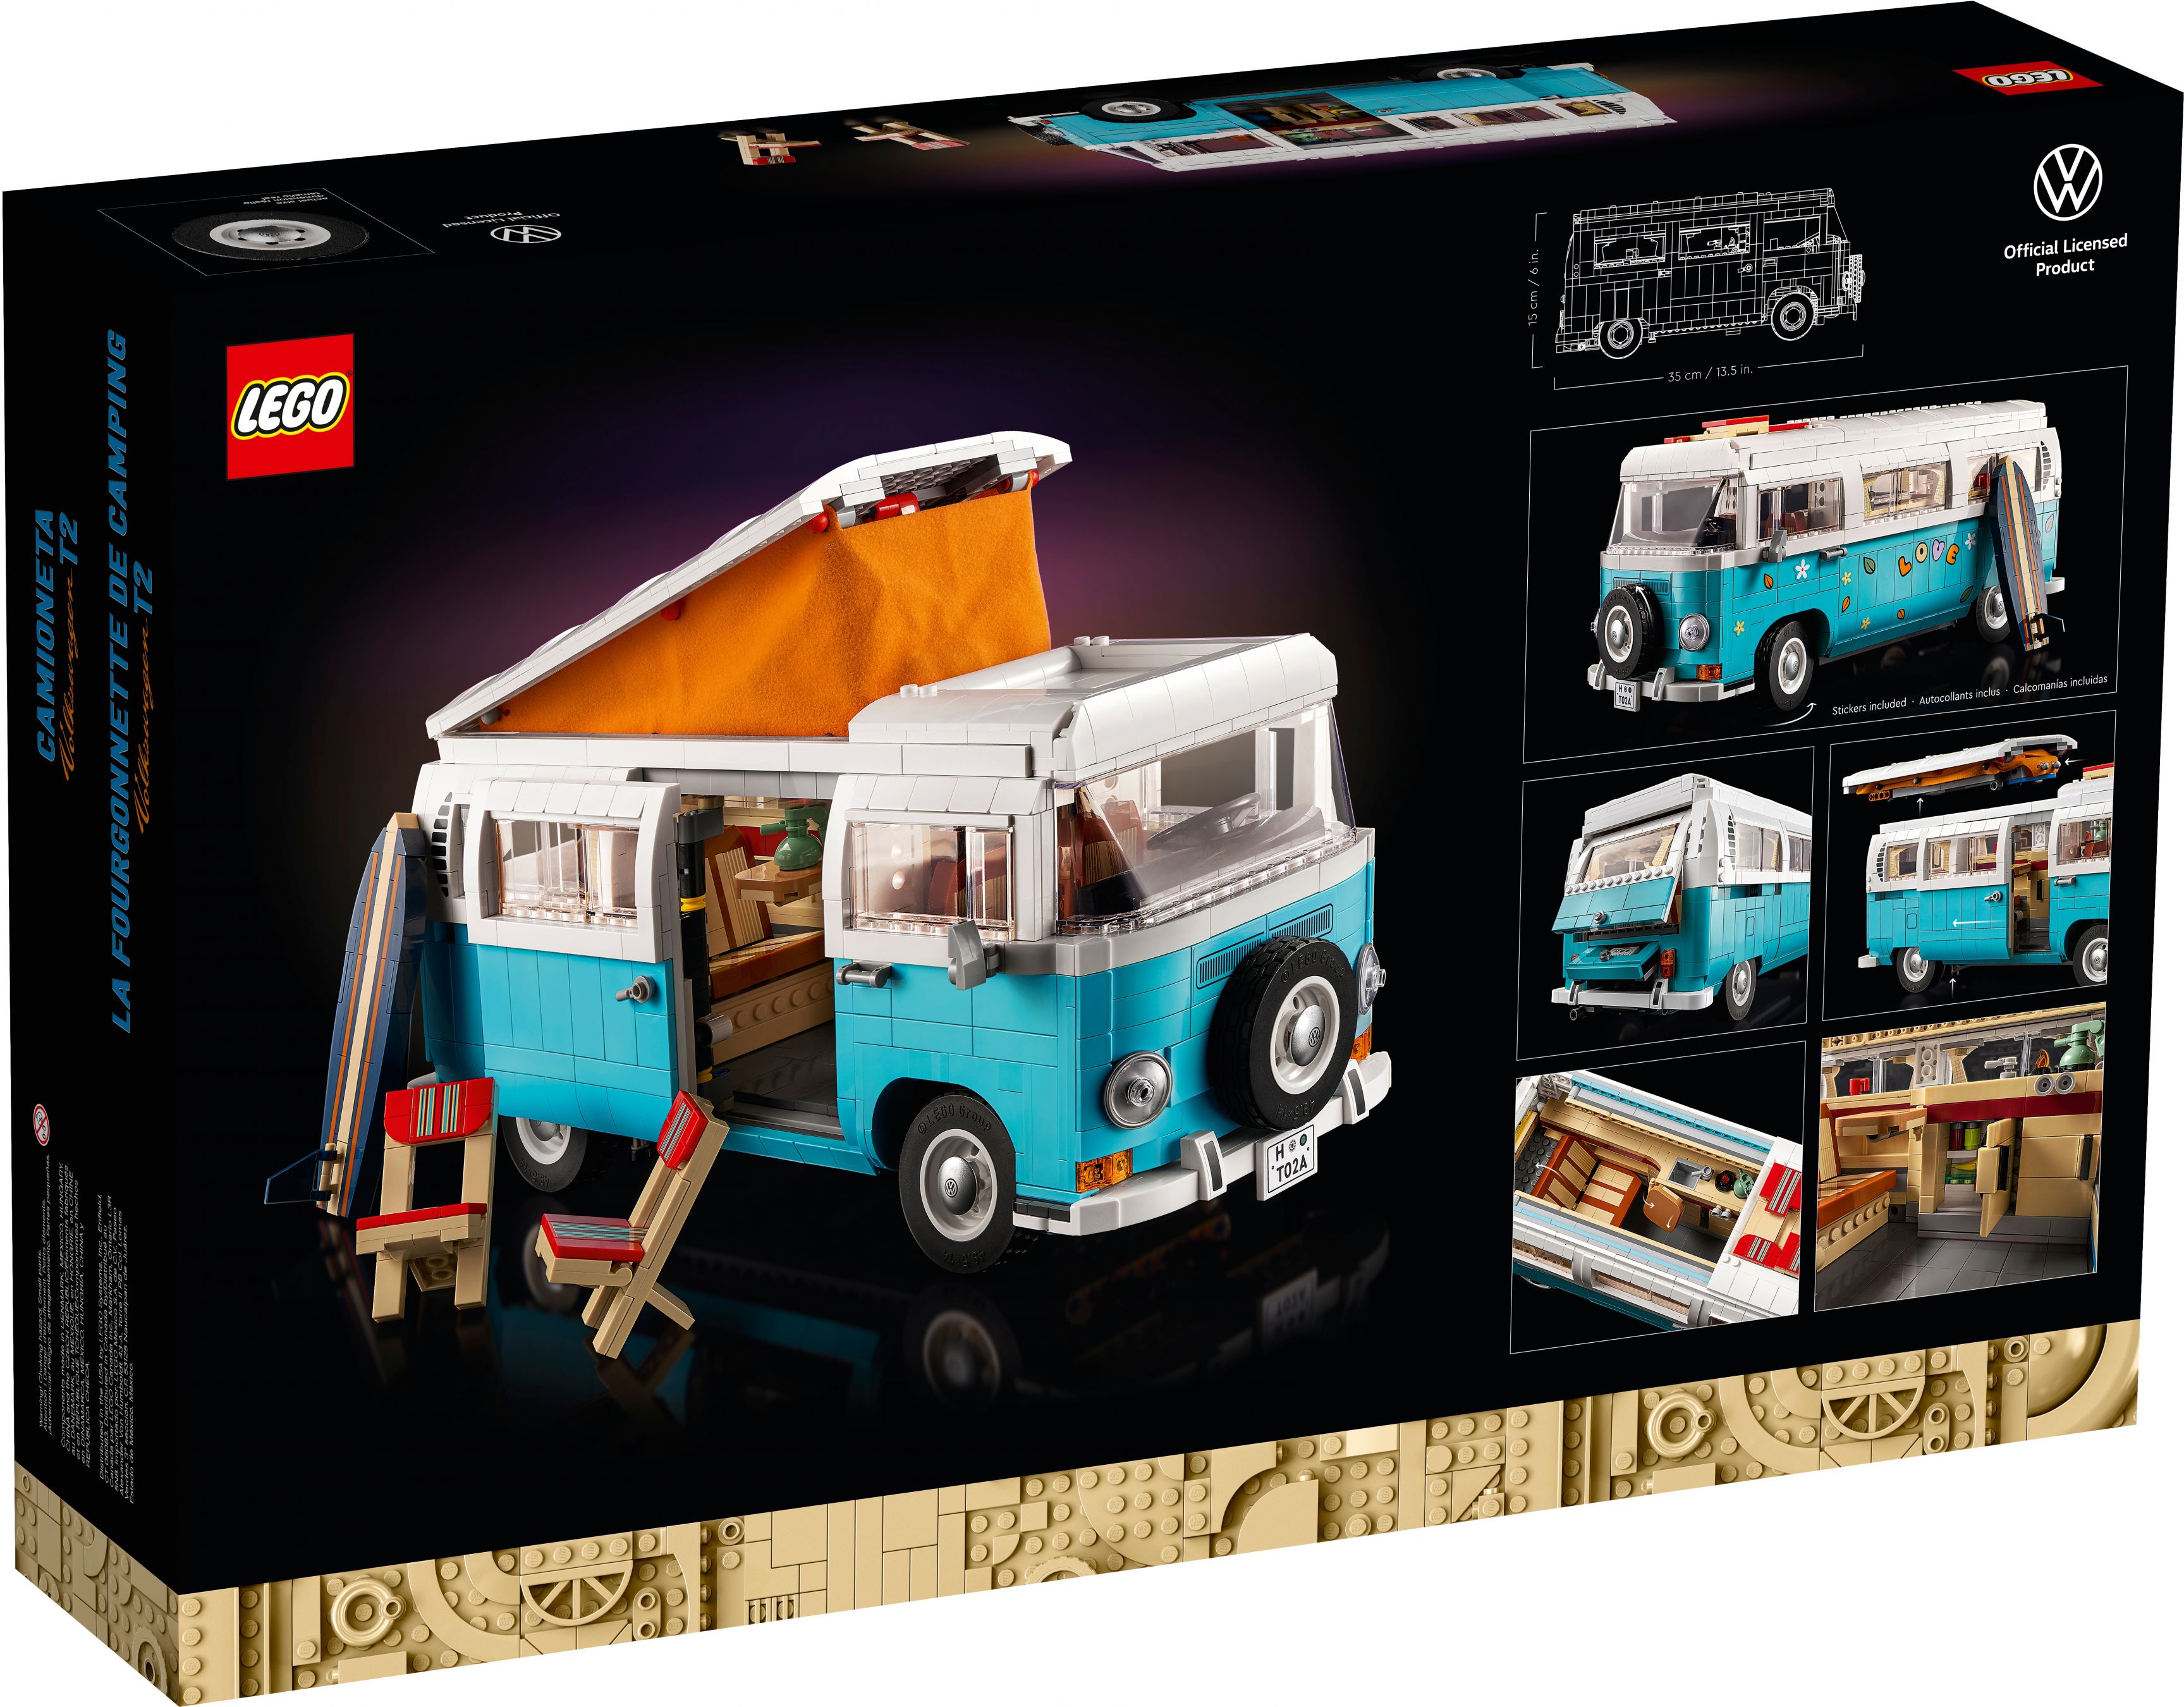 LEGO Advanced Models 10279 Volkswagen T2 Campingbus LEGO_10279_alt12.jpg